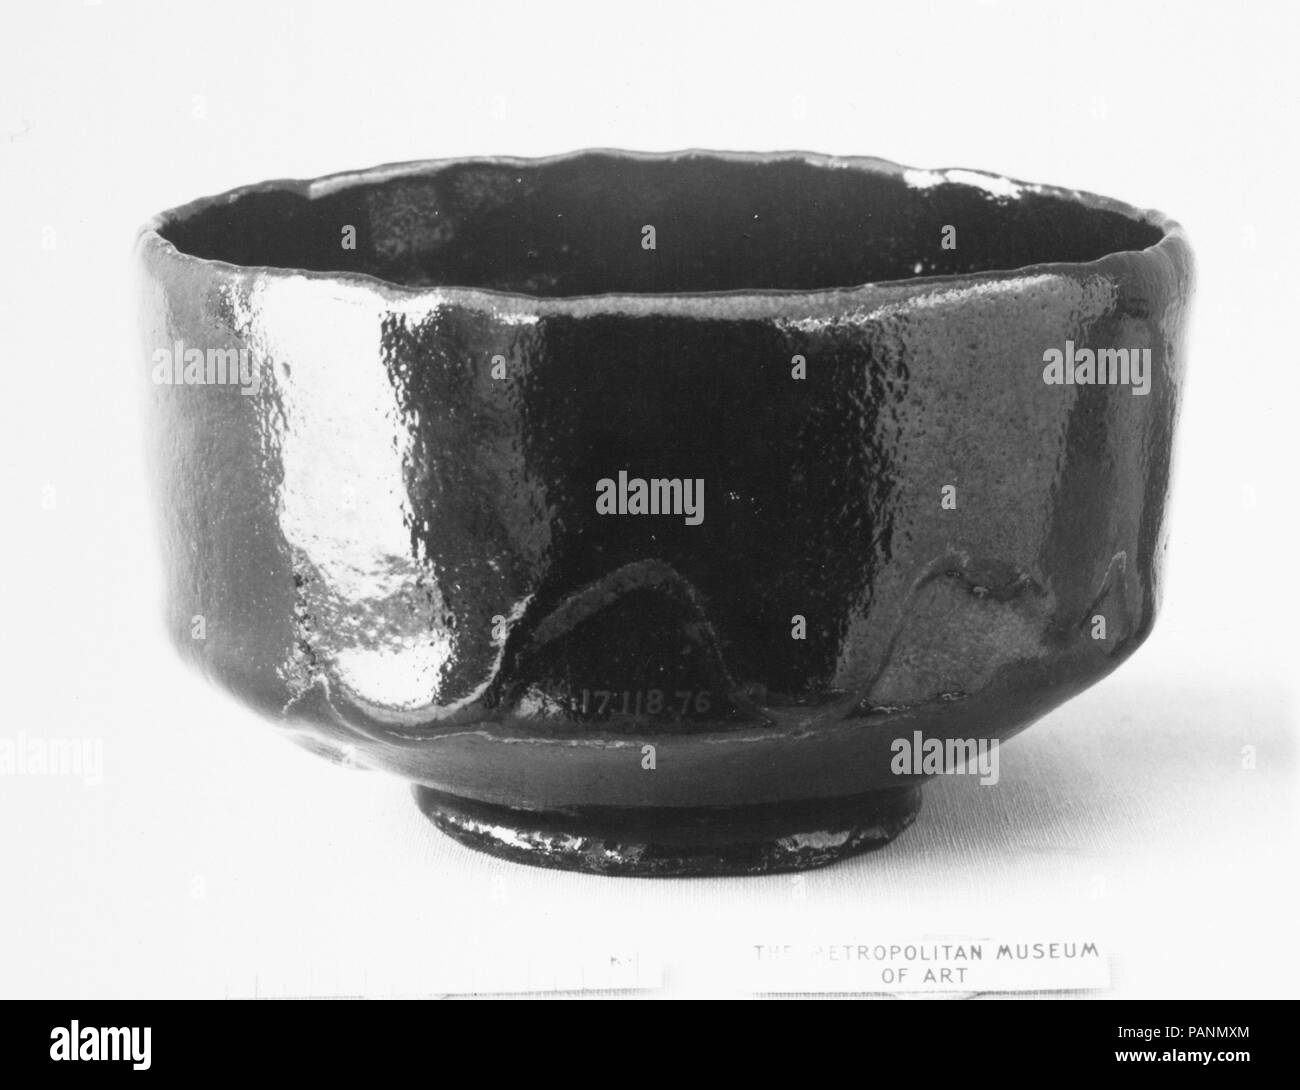 Teabowl. Artiste : Donyu Raku (japonais, est mort 1656). Culture : le Japon. Dimensions : H. 3. (7,6 cm) ; Diam. 5 in. (12,7 cm). Date : ca. 1650. Musée : Metropolitan Museum of Art, New York, USA. Banque D'Images